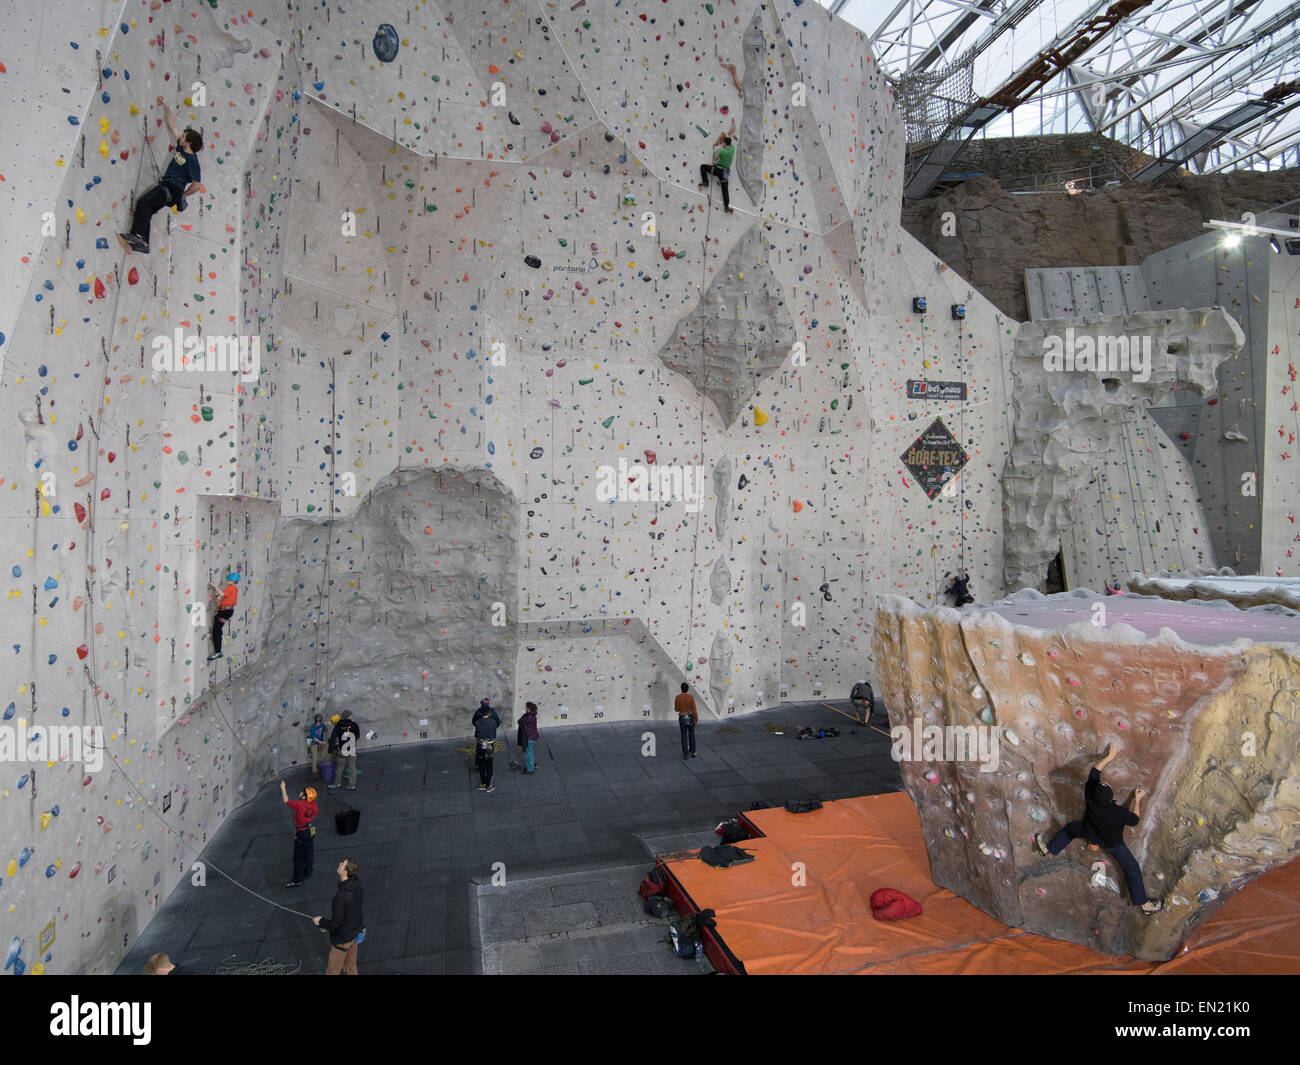 Edinburgh International Climbing Arena - plus grand domaine d'escalade. Ratho, rn Édimbourg, Écosse. Banque D'Images